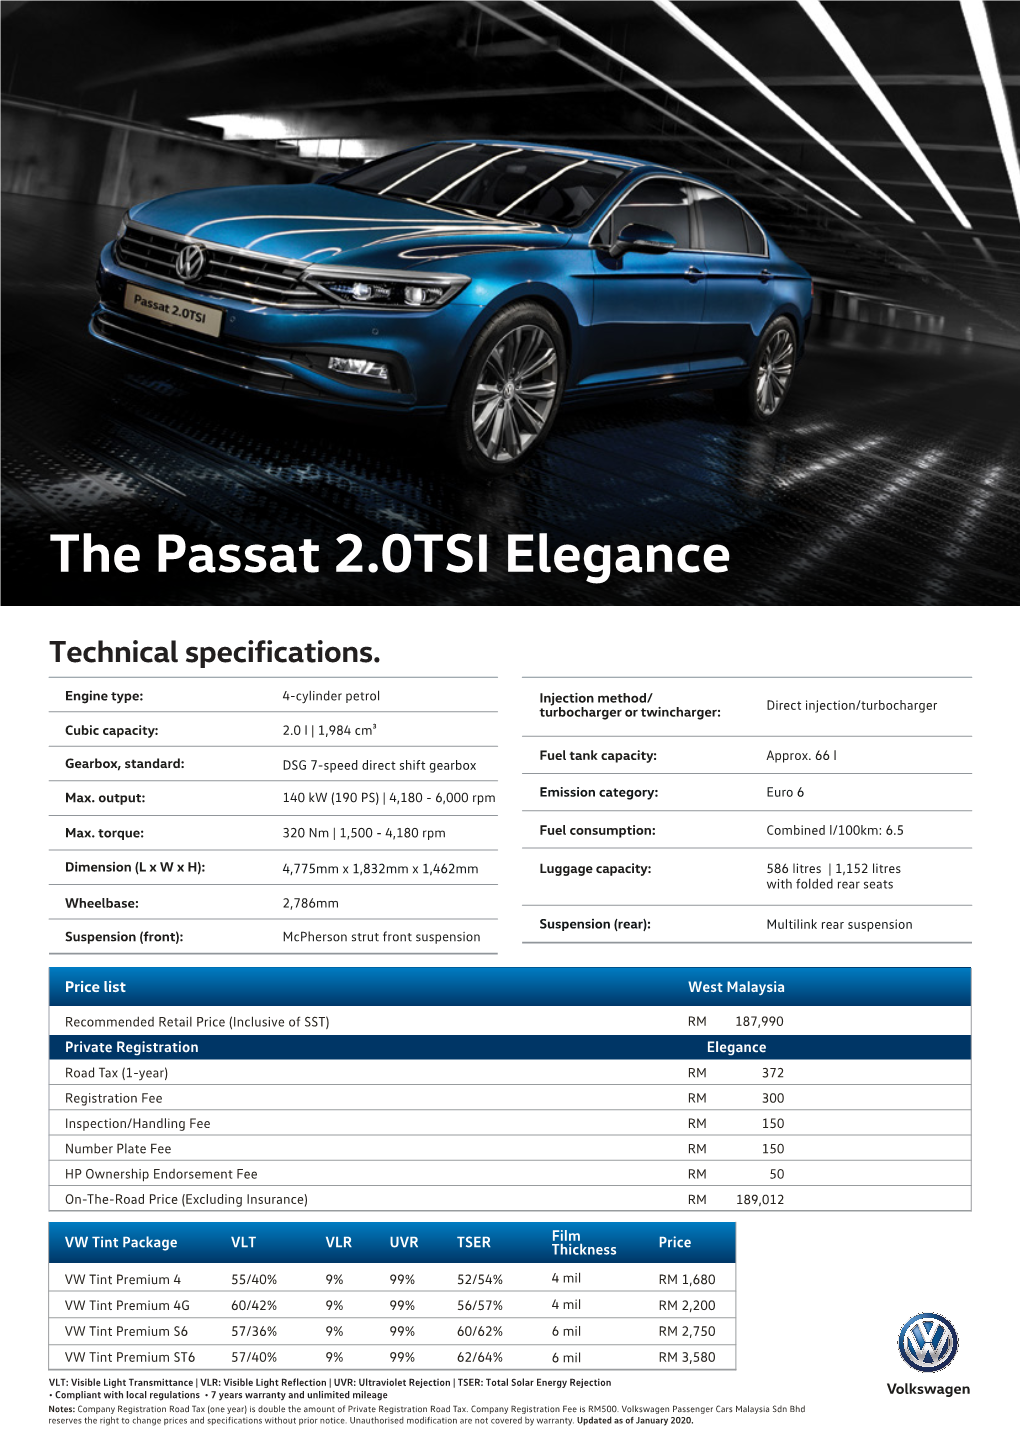 The Passat 2.0TSI Elegance